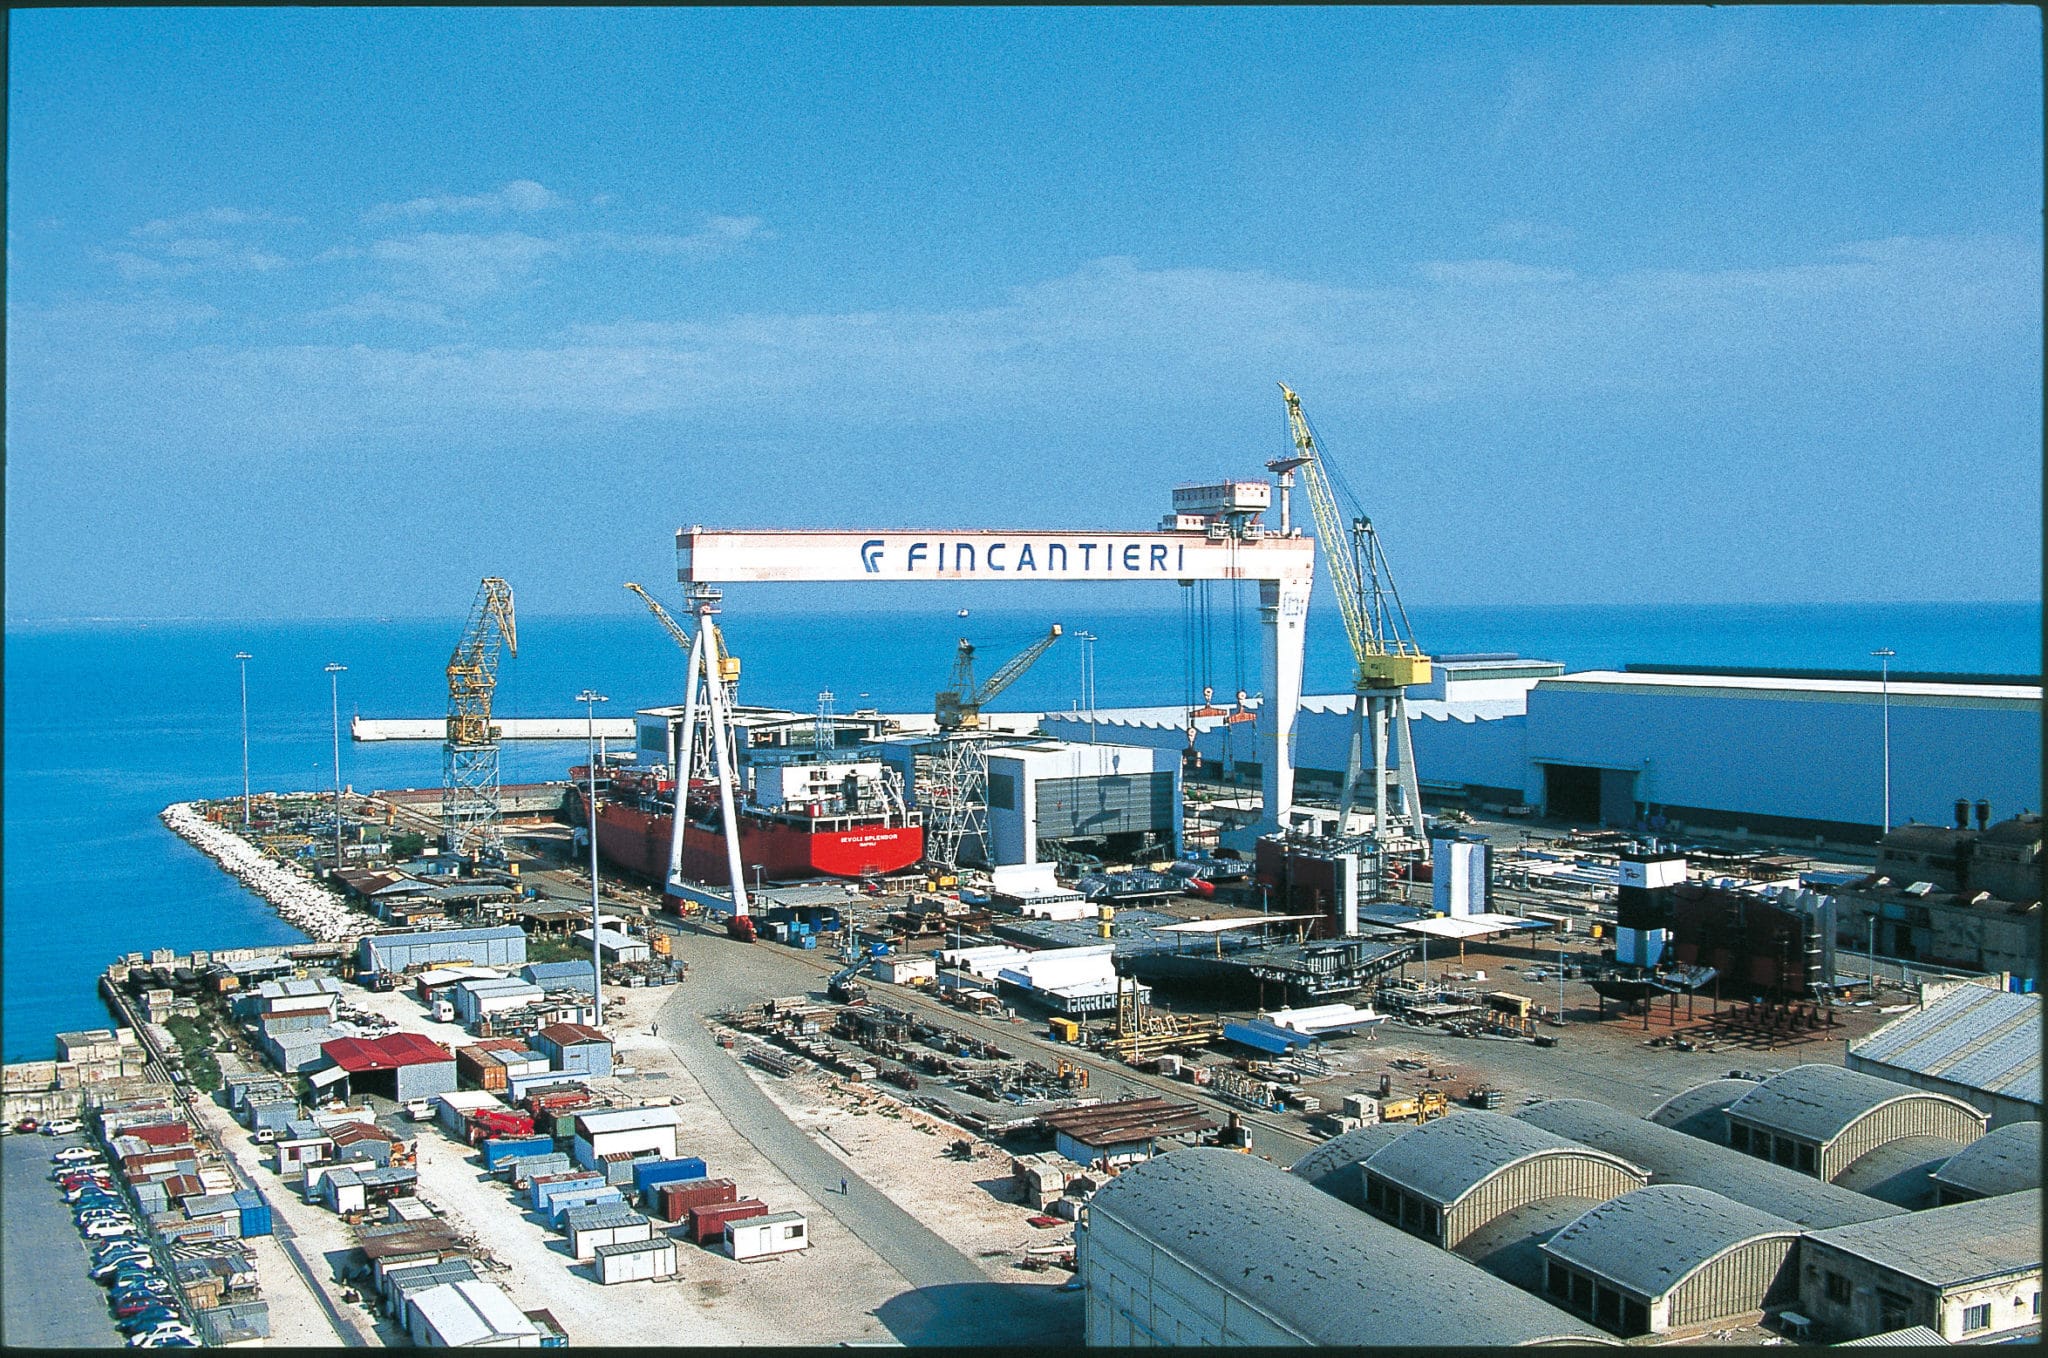 Fincantieri Muggiano Shipyard In La Spezia Start Submarine Production Work